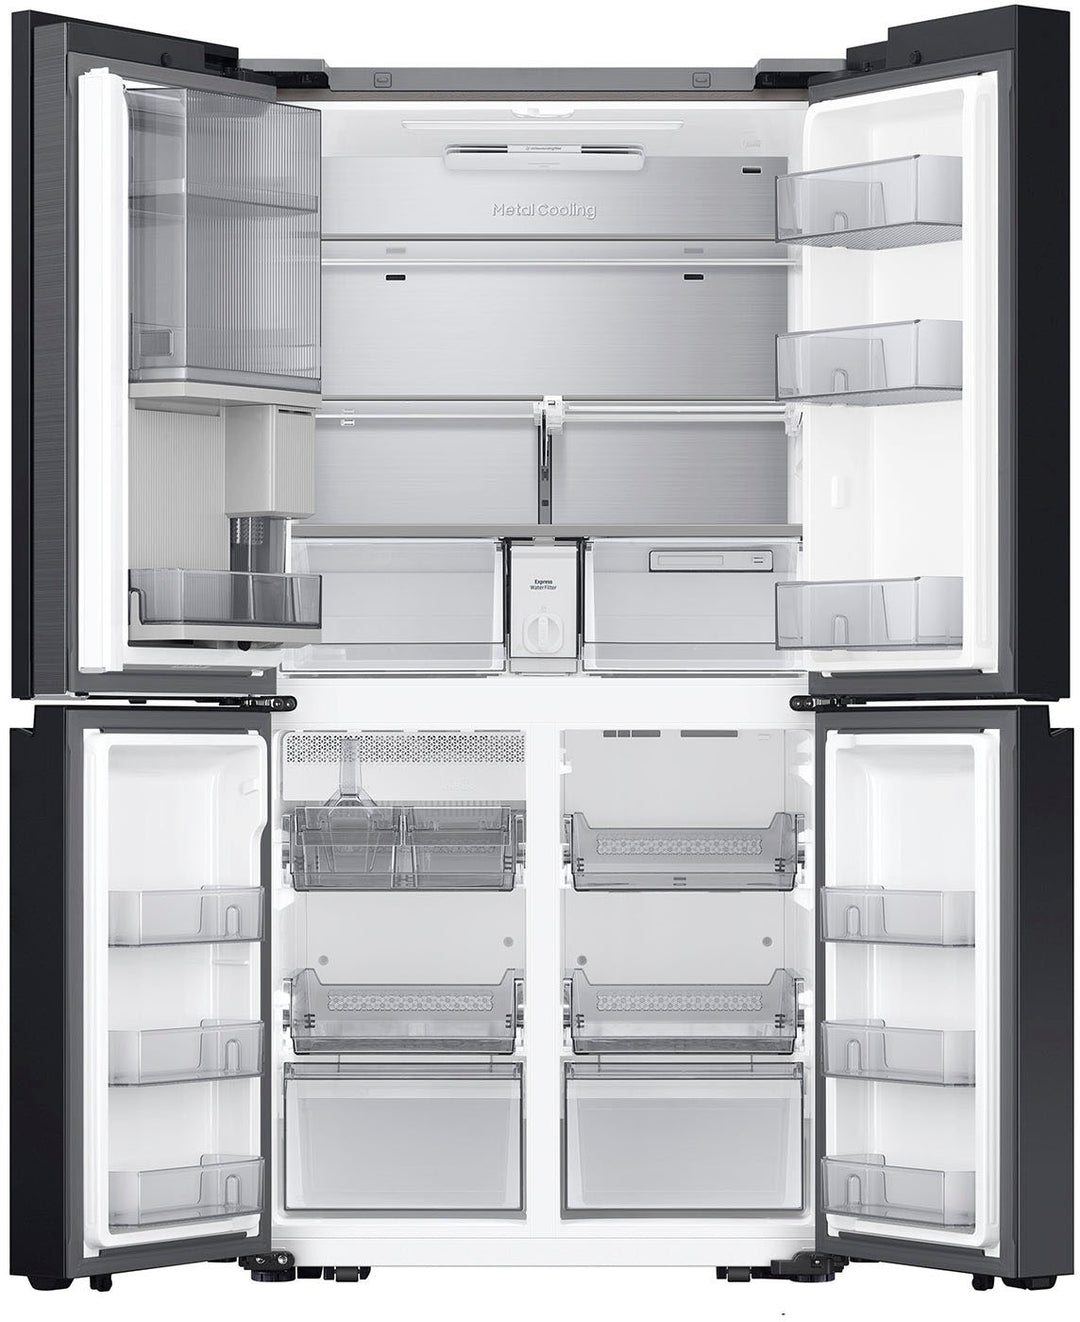 Samsung - Bespoke 23 Cu. Ft. 4-Door Flex French Door Counter Depth Refrigerator with Beverage Zone and Auto Open Door - Stainless Steel_5